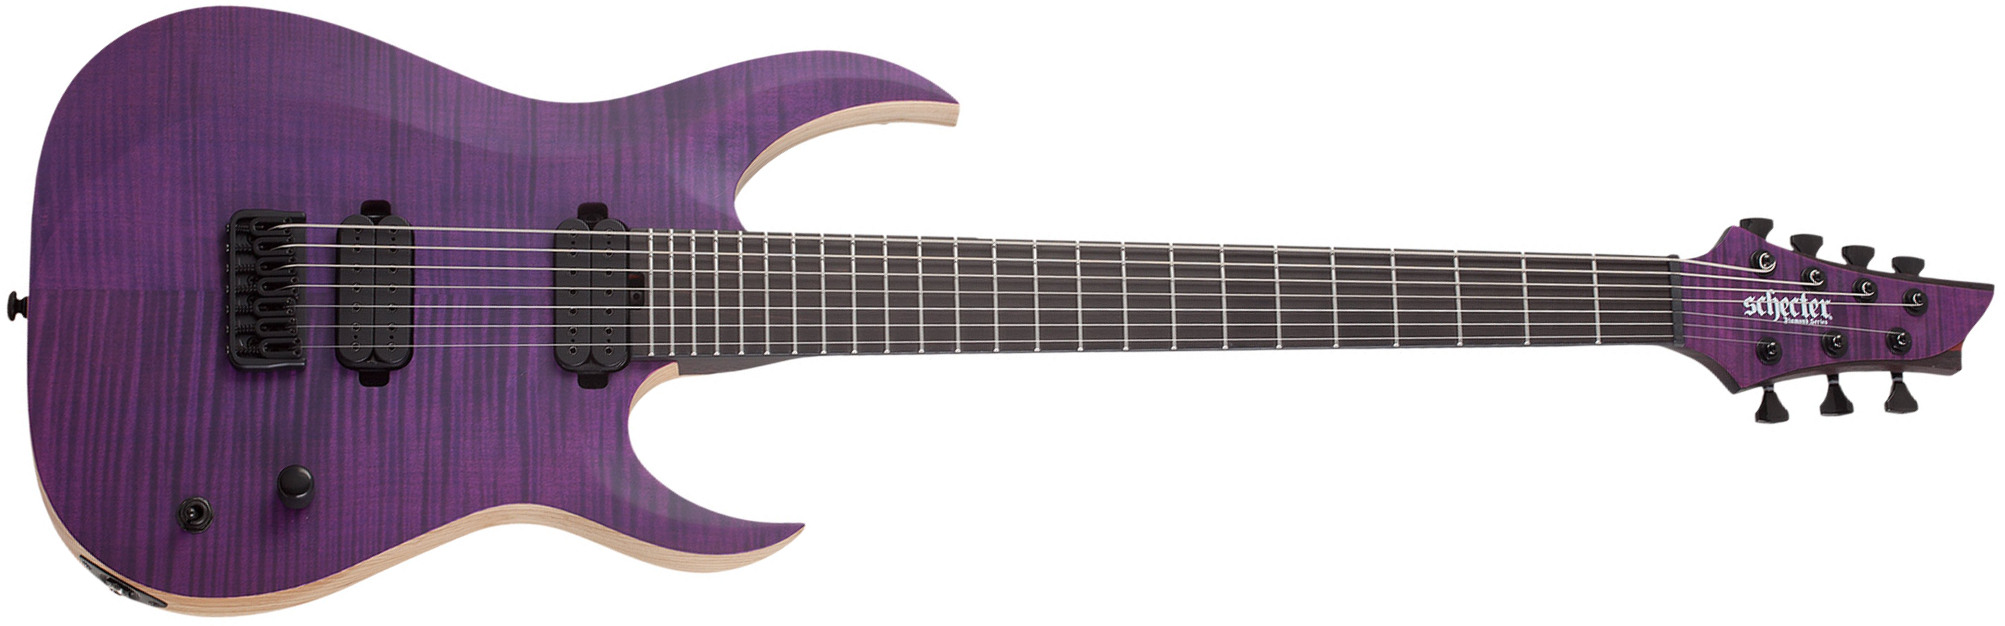 Schecter John Browne Tao-7 Signature Baryton 2h Ht Eb - Satin Trans Purple - Guitare Électrique 7 Cordes - Main picture